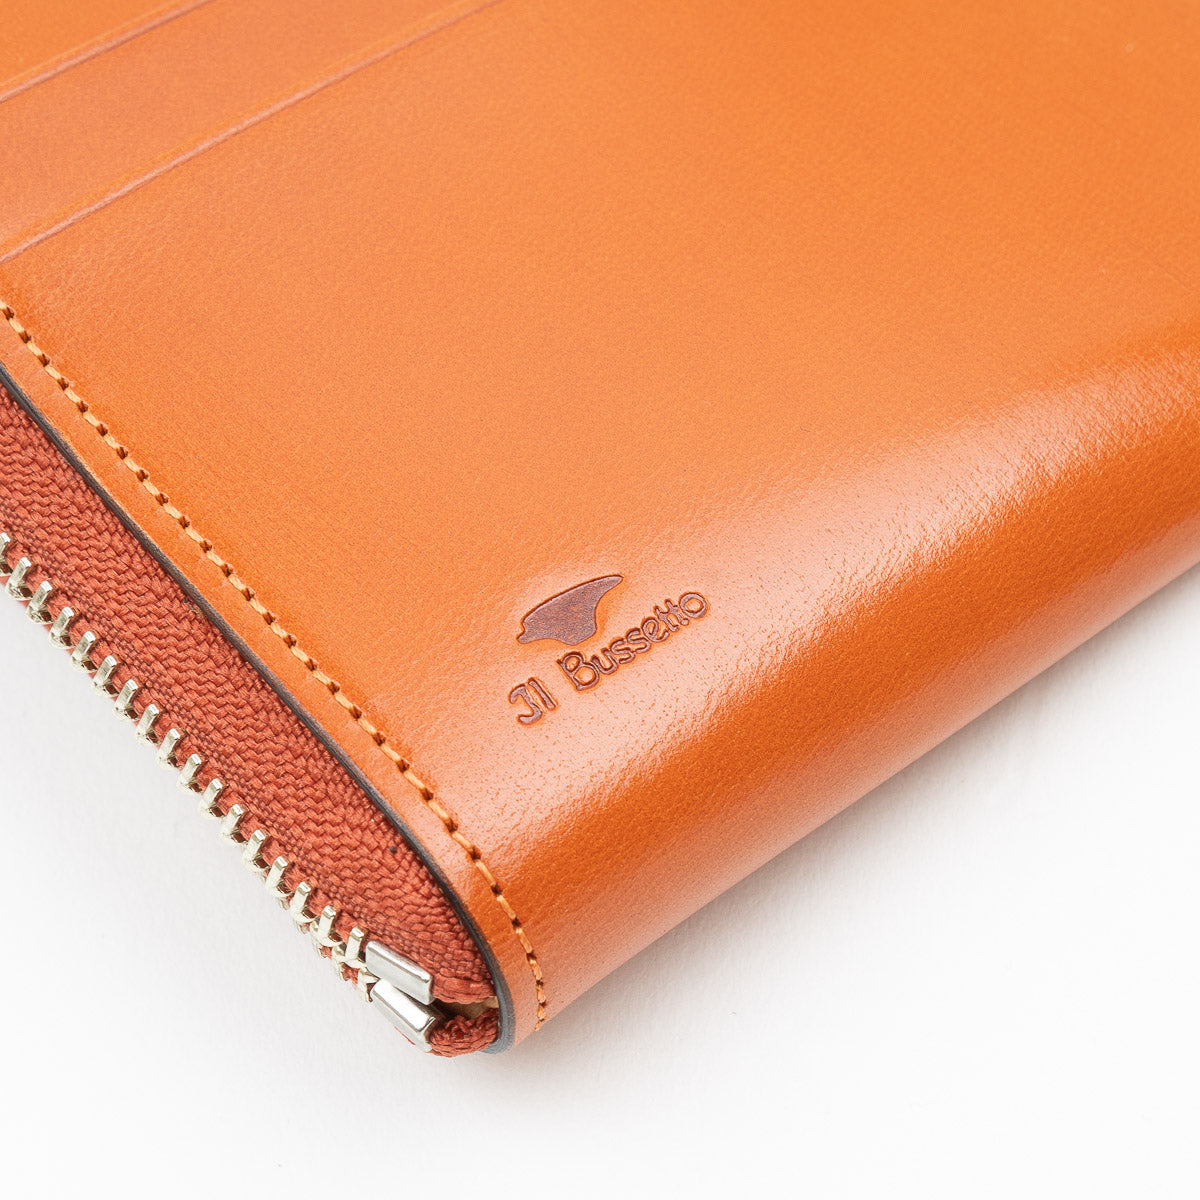 Zipped Wallet - Orange